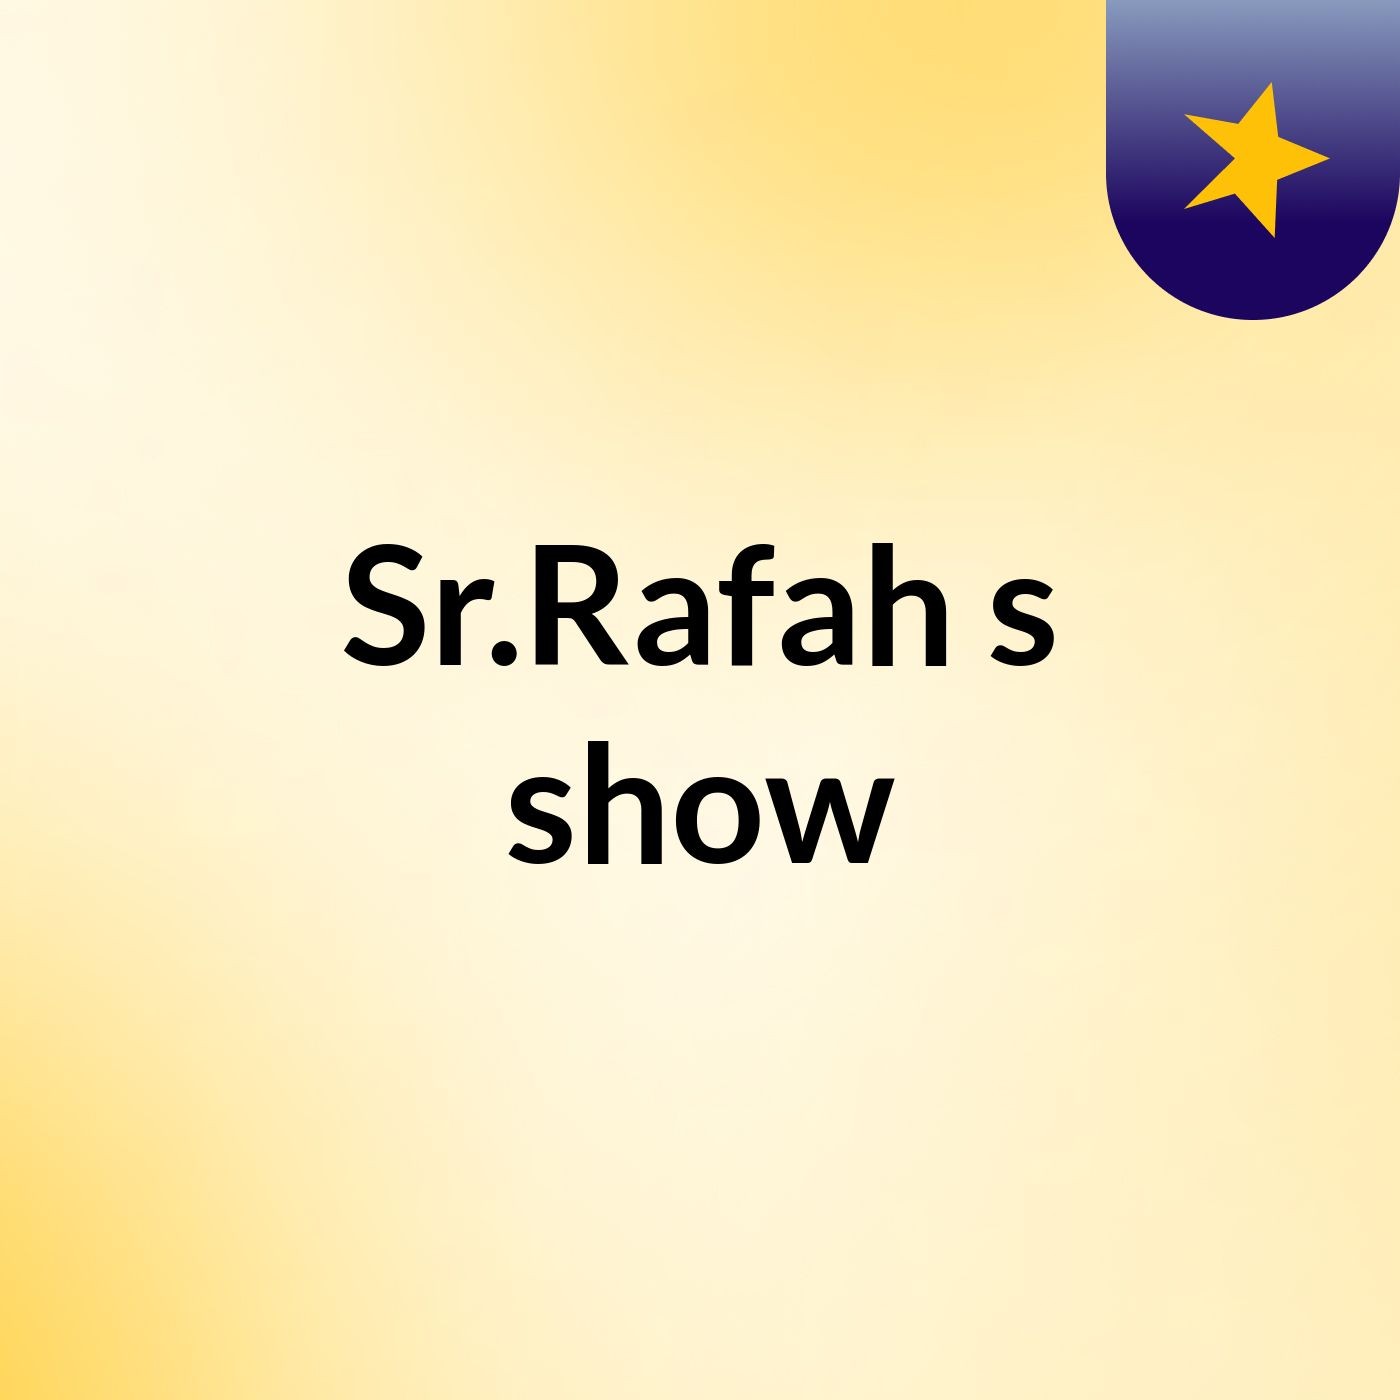 Sr.Rafah's show